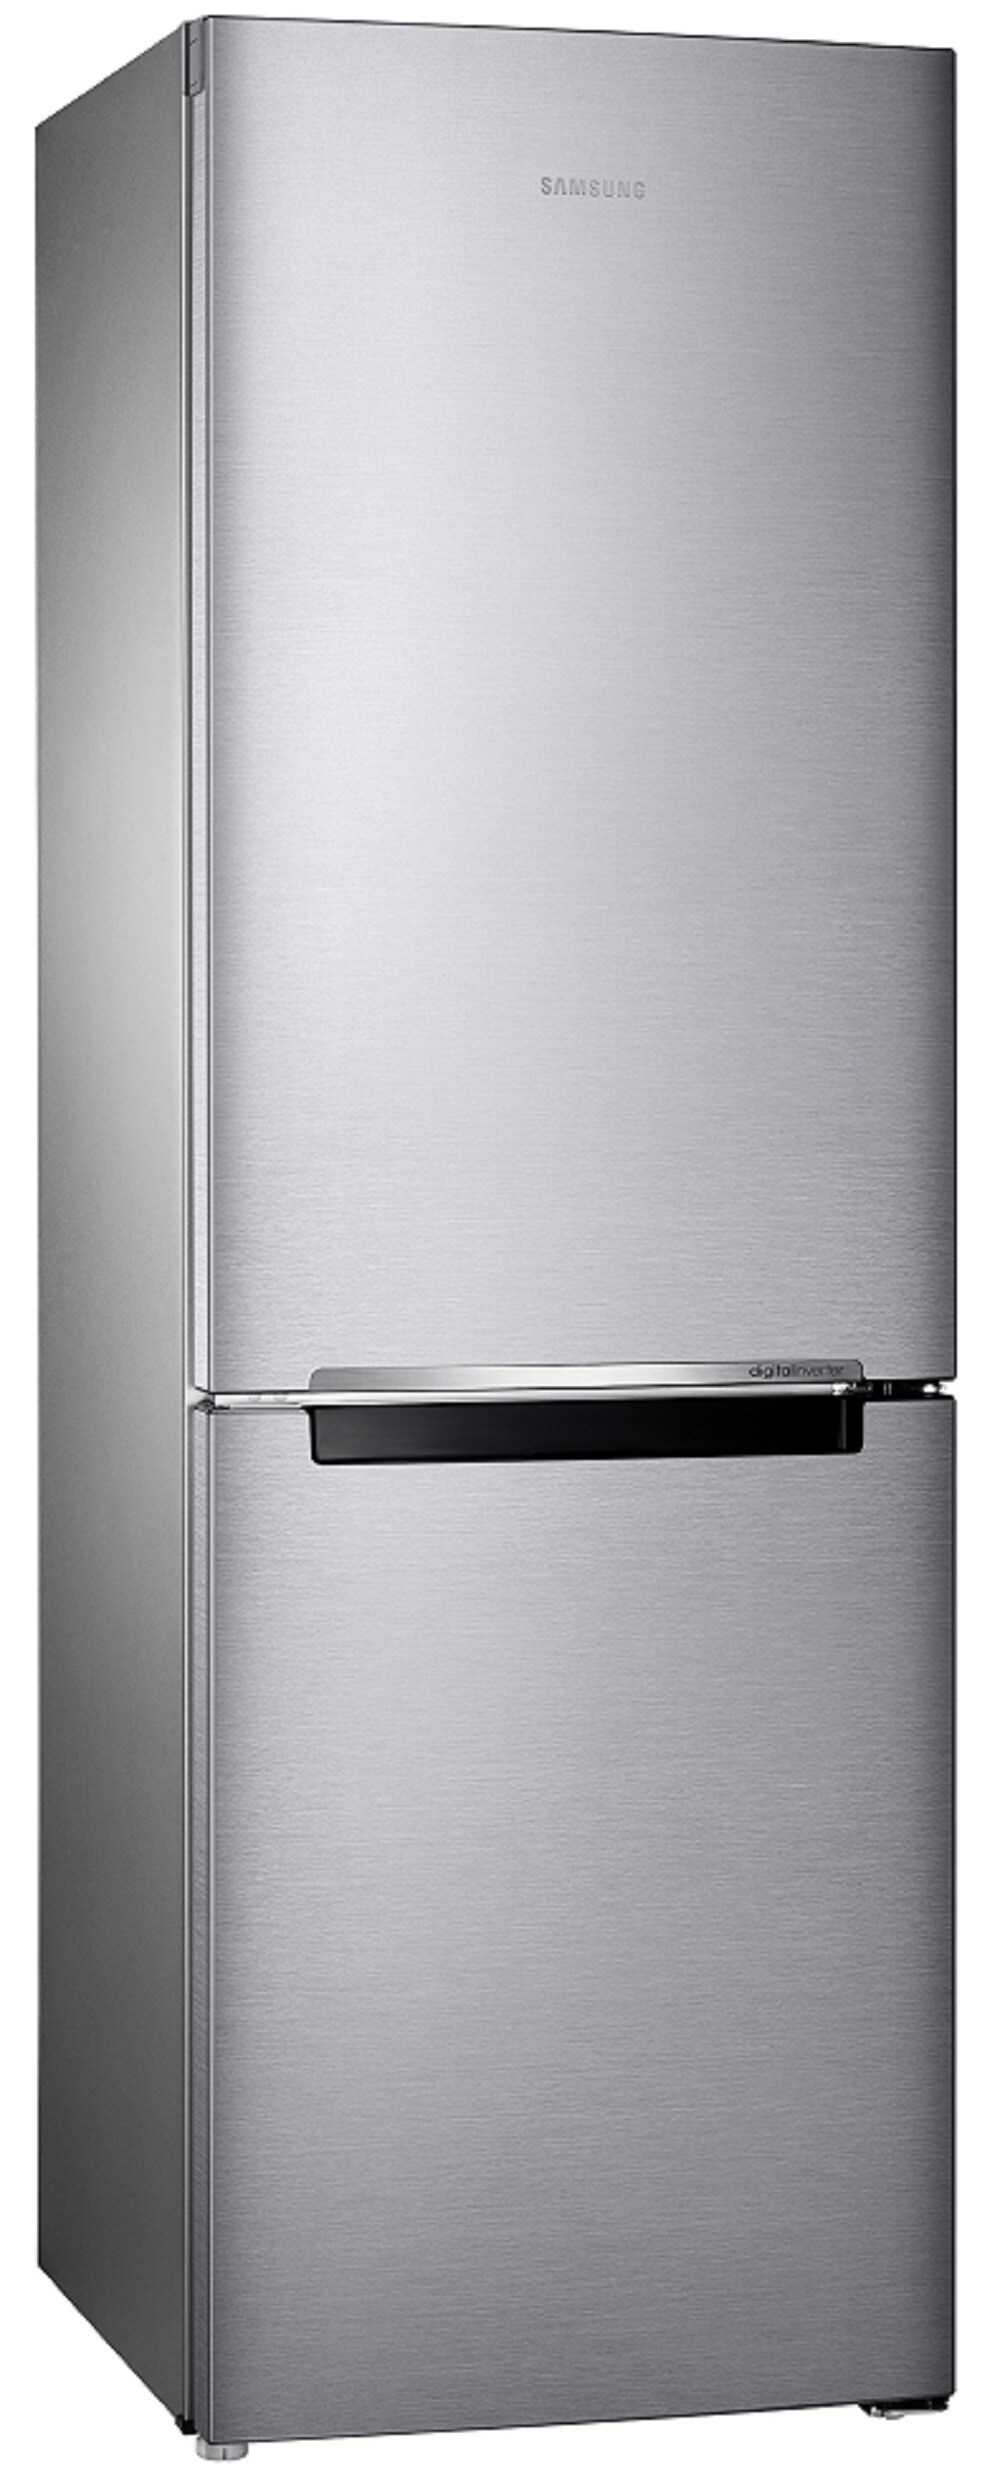 Details about   DA91-05126K OEM New Samsung Refrigerator Door Stainless Assy    For RB10FSR4ESR 